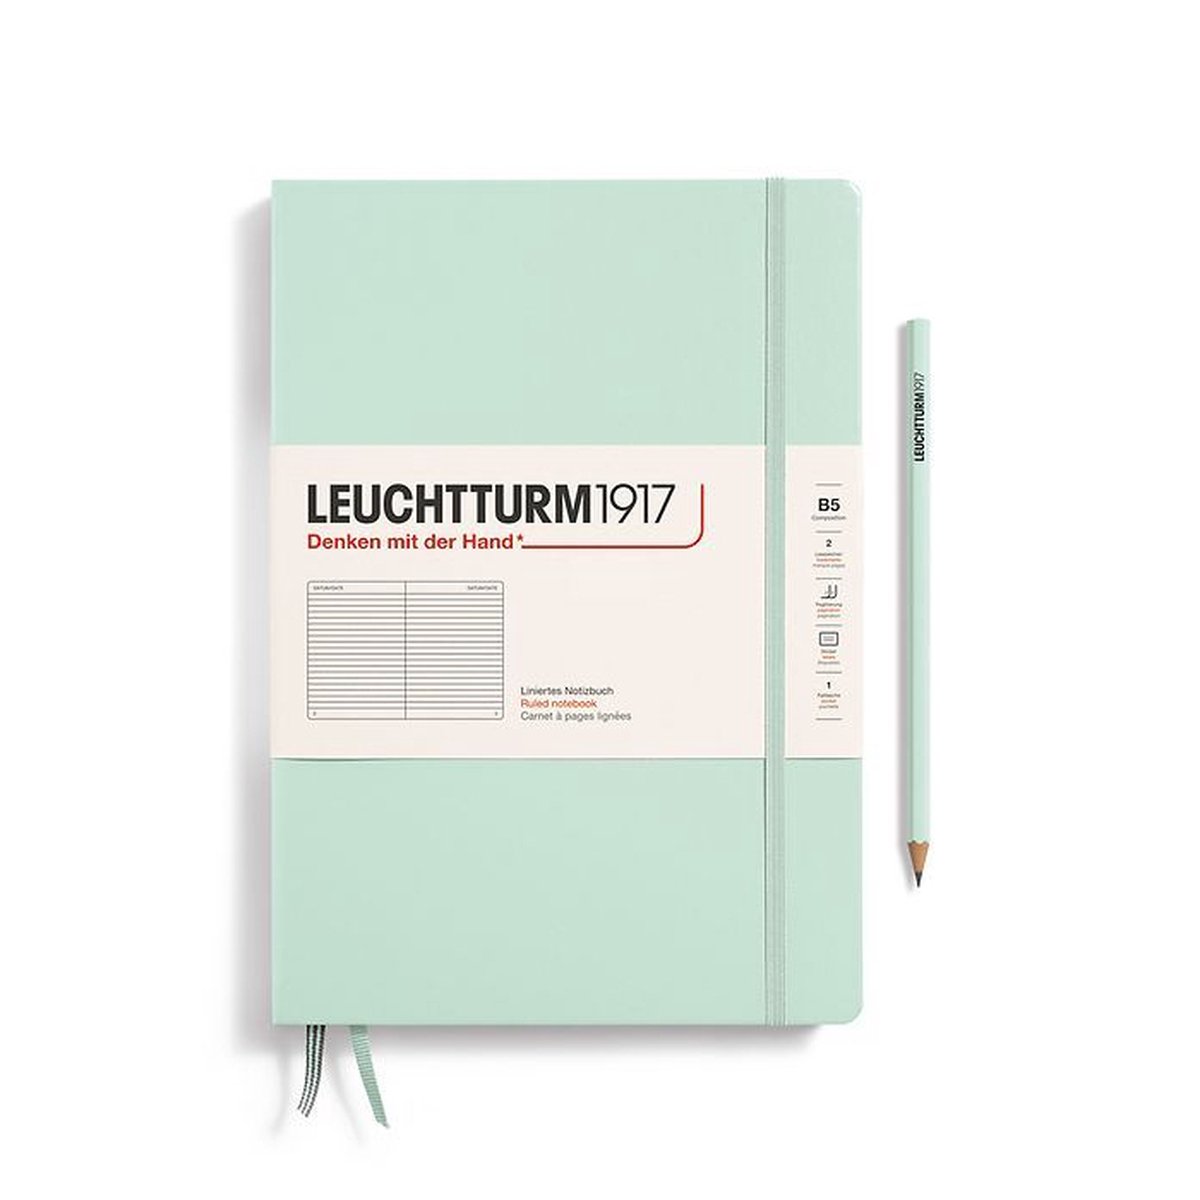 Leuchtturm notitieboek mint green lined composition hardcover b5 178x254mm